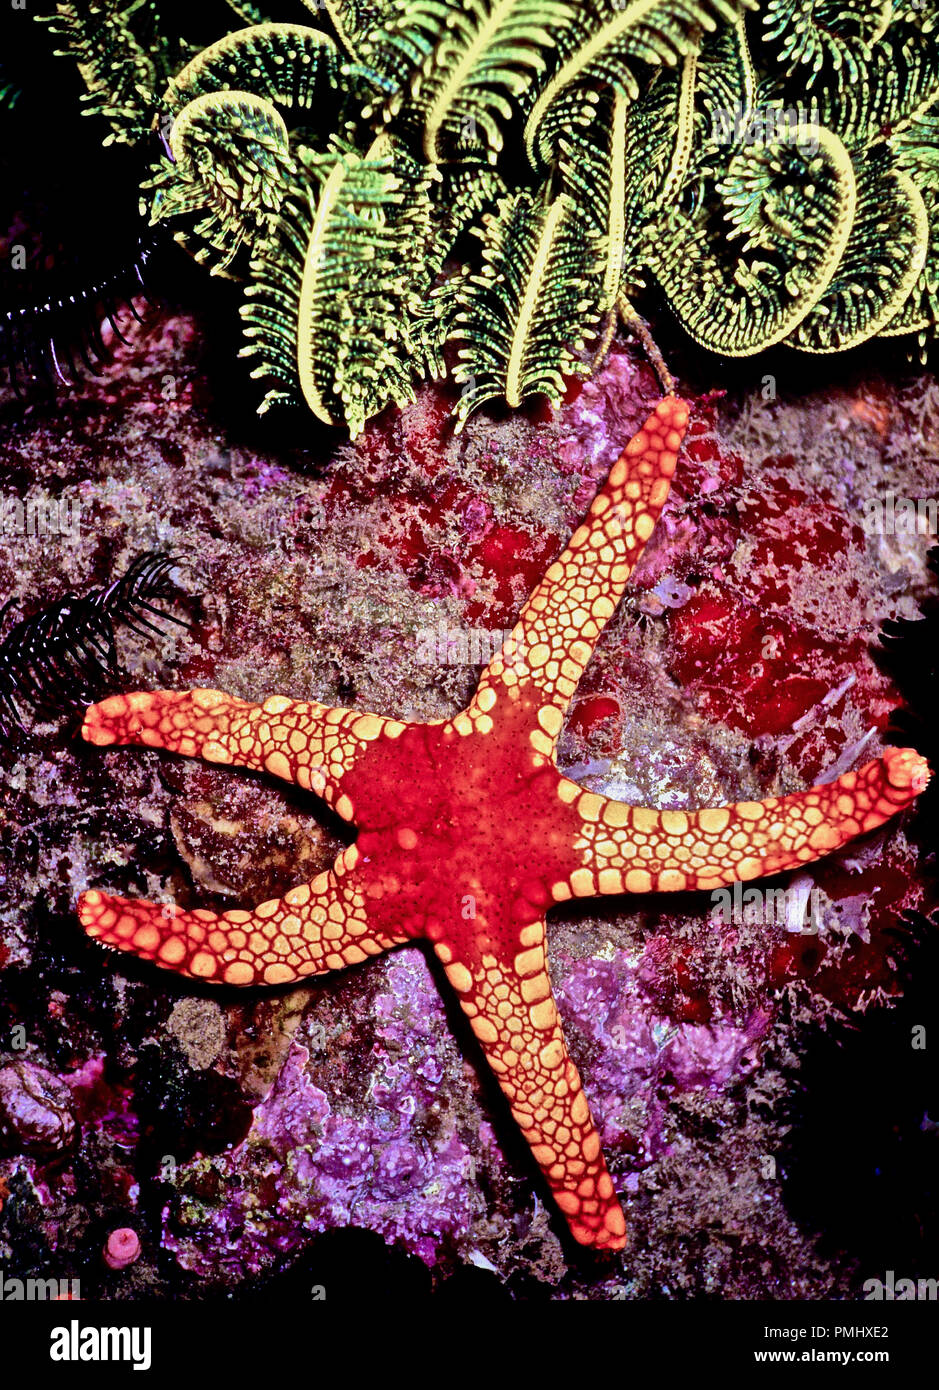 Questa è una perla stella di mare (Fromia monilis: 20 cm.), che è una delle più belle specie di stelle marine. Esso ha un grande rosso piastra centrale, la bocca essendo al di sotto di questa zona. I cinque bracci sono coperti da molti piccoli vivacemente colorato piastre. Stelle di mare può crescere un nuovo arto se uno è stato mangiato. La rigenerazione di stelle marine, sottoposto a tale comportamento predatorio, può spesso essere visto con 3 o 4 bracci. Mobile per mezzo di centinaia di idraulicamente-controllato i piedi di tubo, si nutrono principalmente di spugne e piccoli invertebrati. In alto vi è una parte di un giallo (featherstar Oligometra serripinna). Mar Rosso egiziano Foto Stock